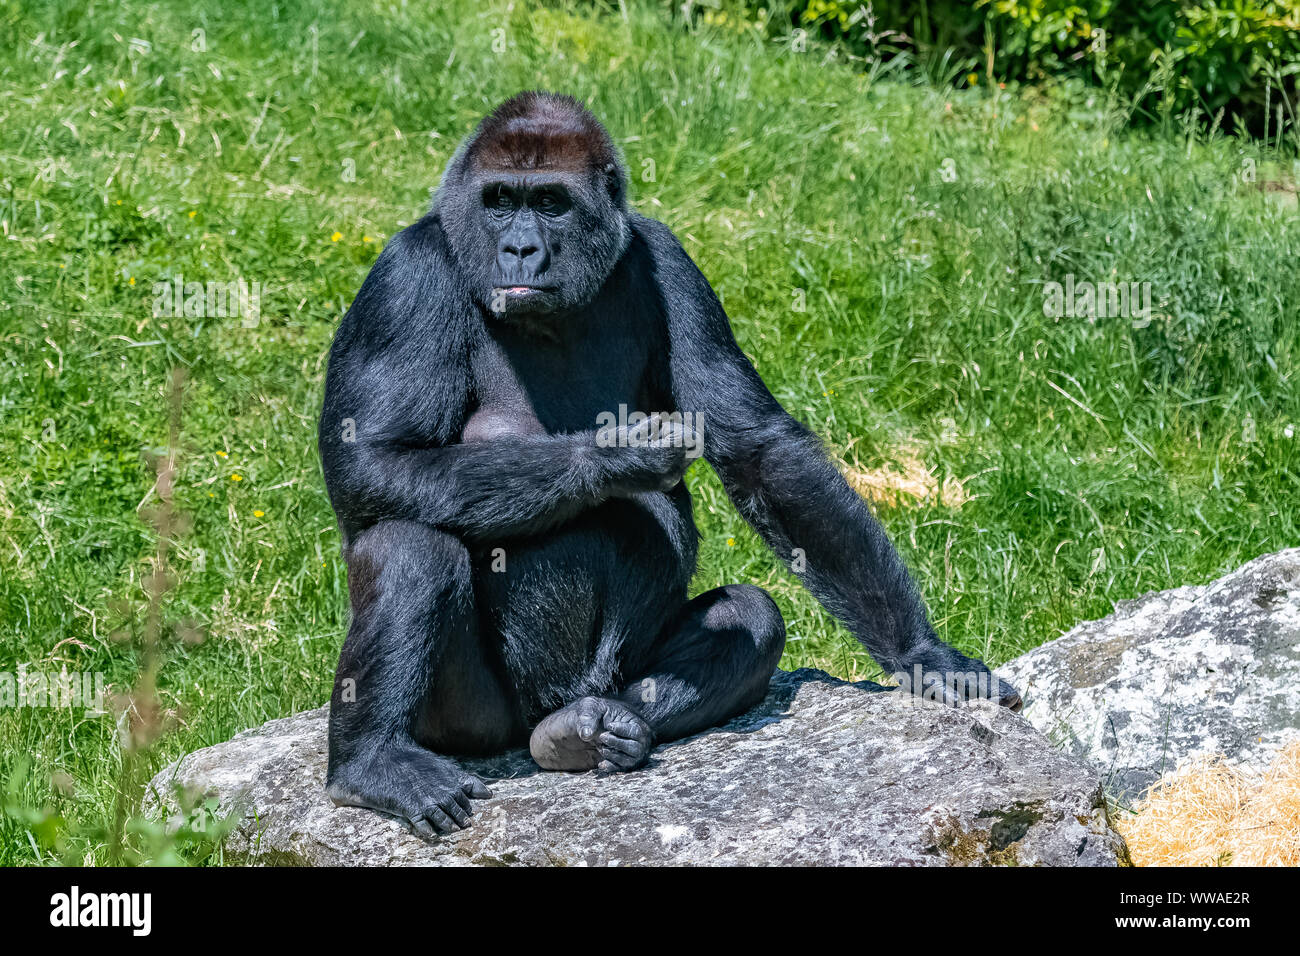 Gorilla, scimmia, femmina seduto in erba, atteggiamento divertente Foto Stock